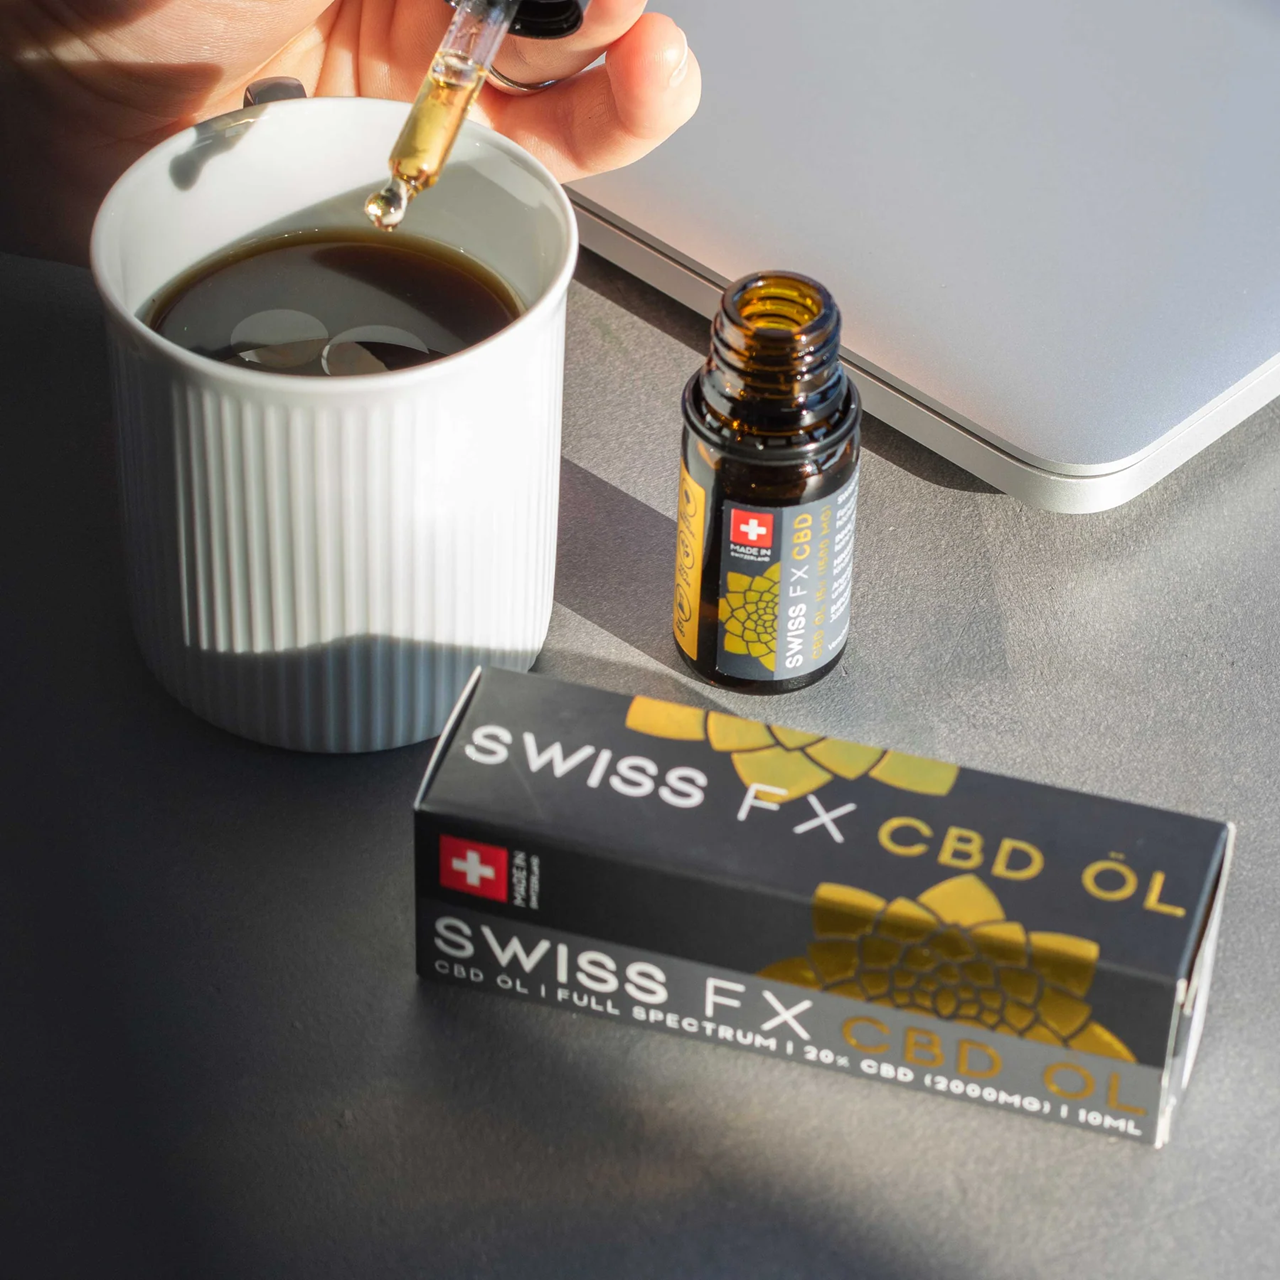 SwissFX CBD Oel Kleine Auswahl unserer Produkte Hochwertiges CBD Öl kaufen